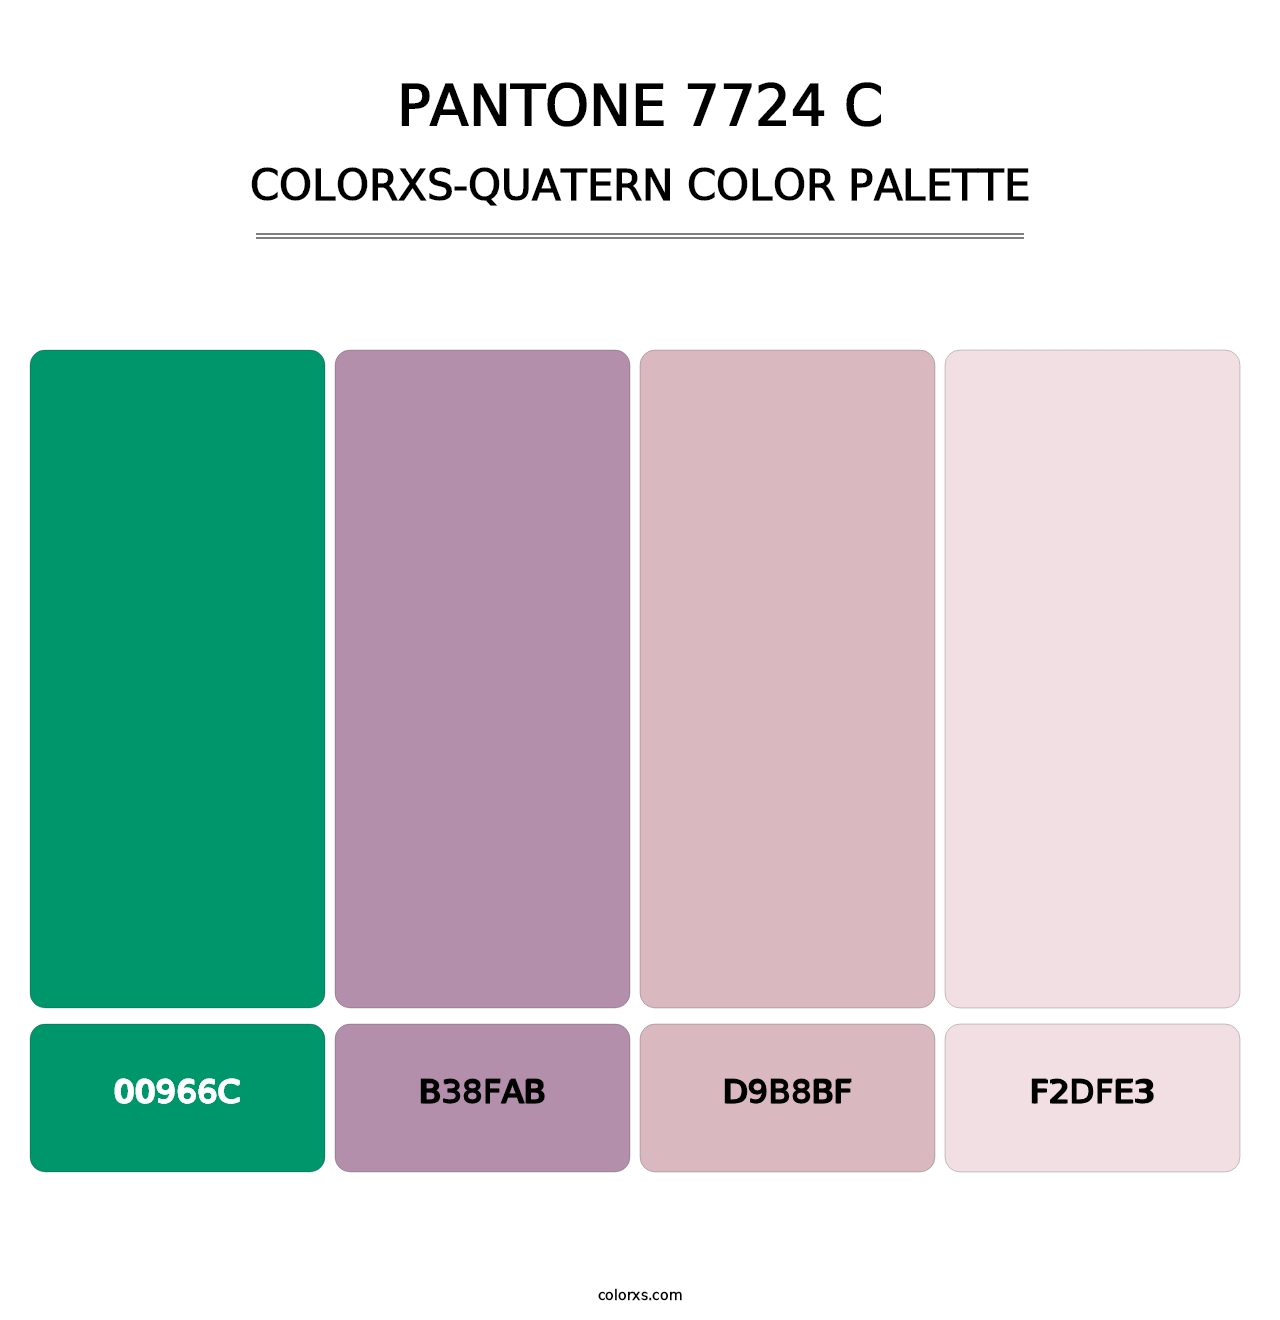 PANTONE 7724 C - Colorxs Quatern Palette